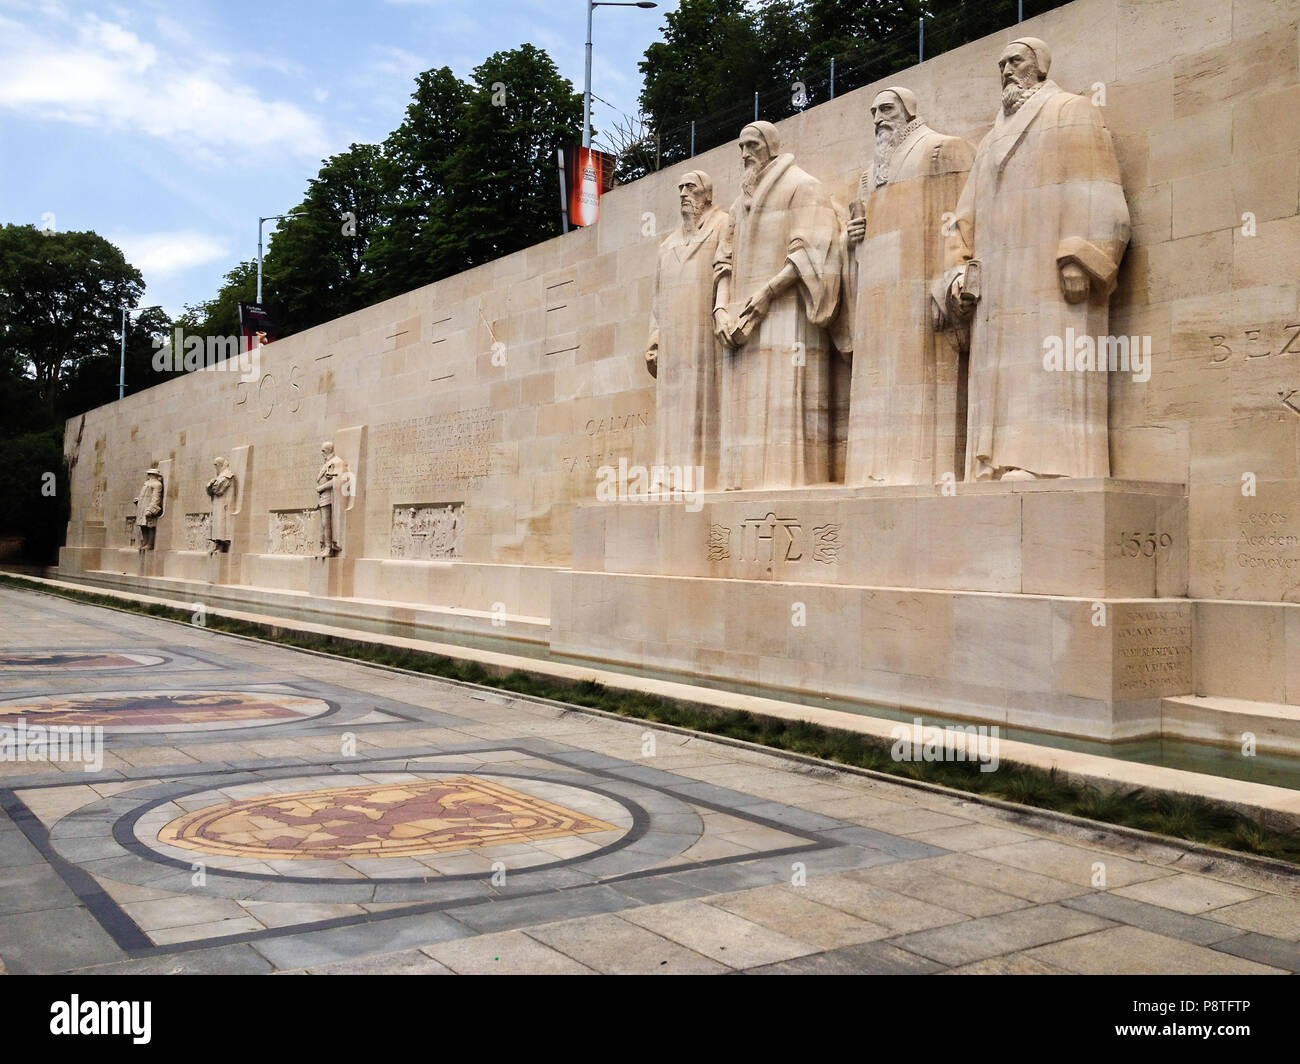 Genf, Schweiz - 28. Juni 2012: Reformation Wand im Parc Des Bastions, wurde  in alten Stadtmauern gebaut. Calvinistische denkmal Statuen sind William  Fahrpreis Stockfotografie - Alamy